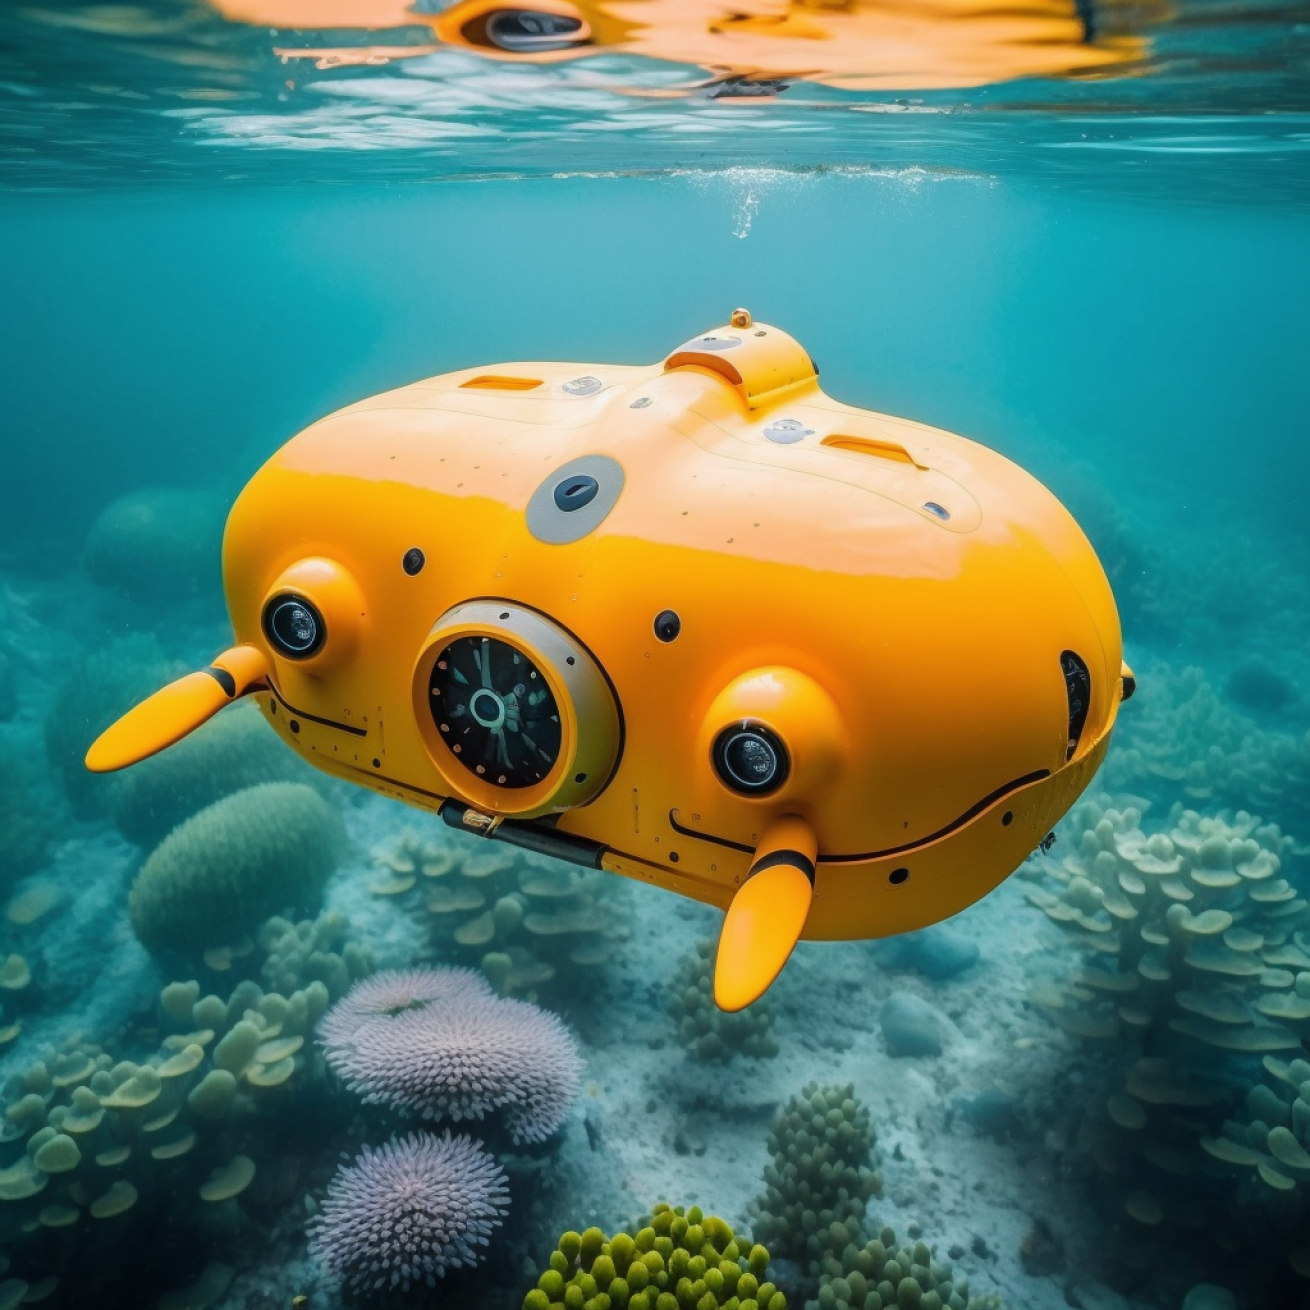 underwater drone rendering